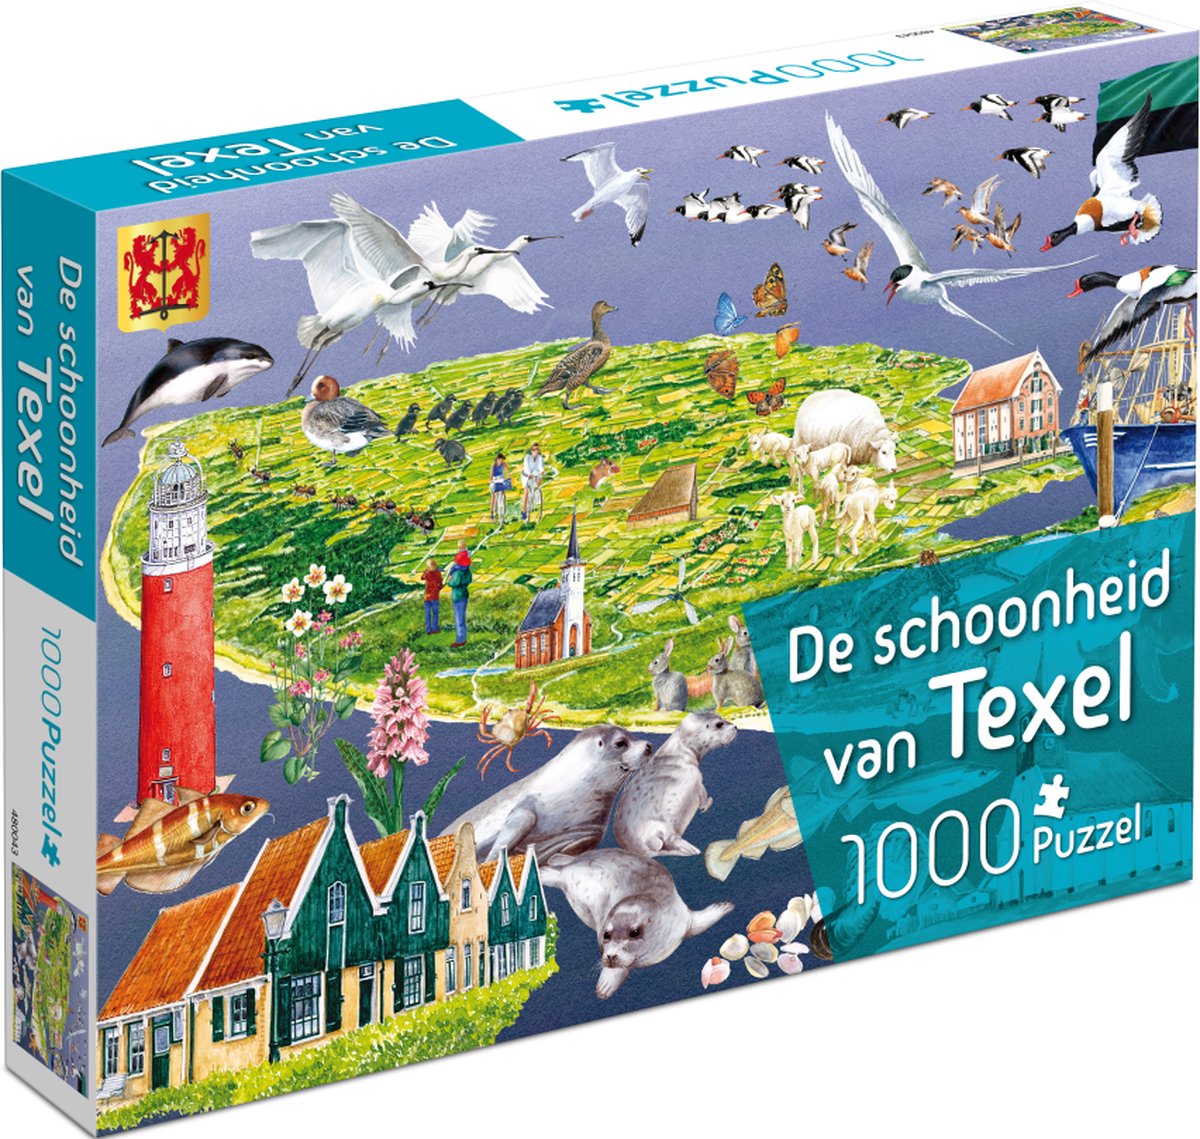 Puzzel de schoonheid van Texel 1000 stukjes